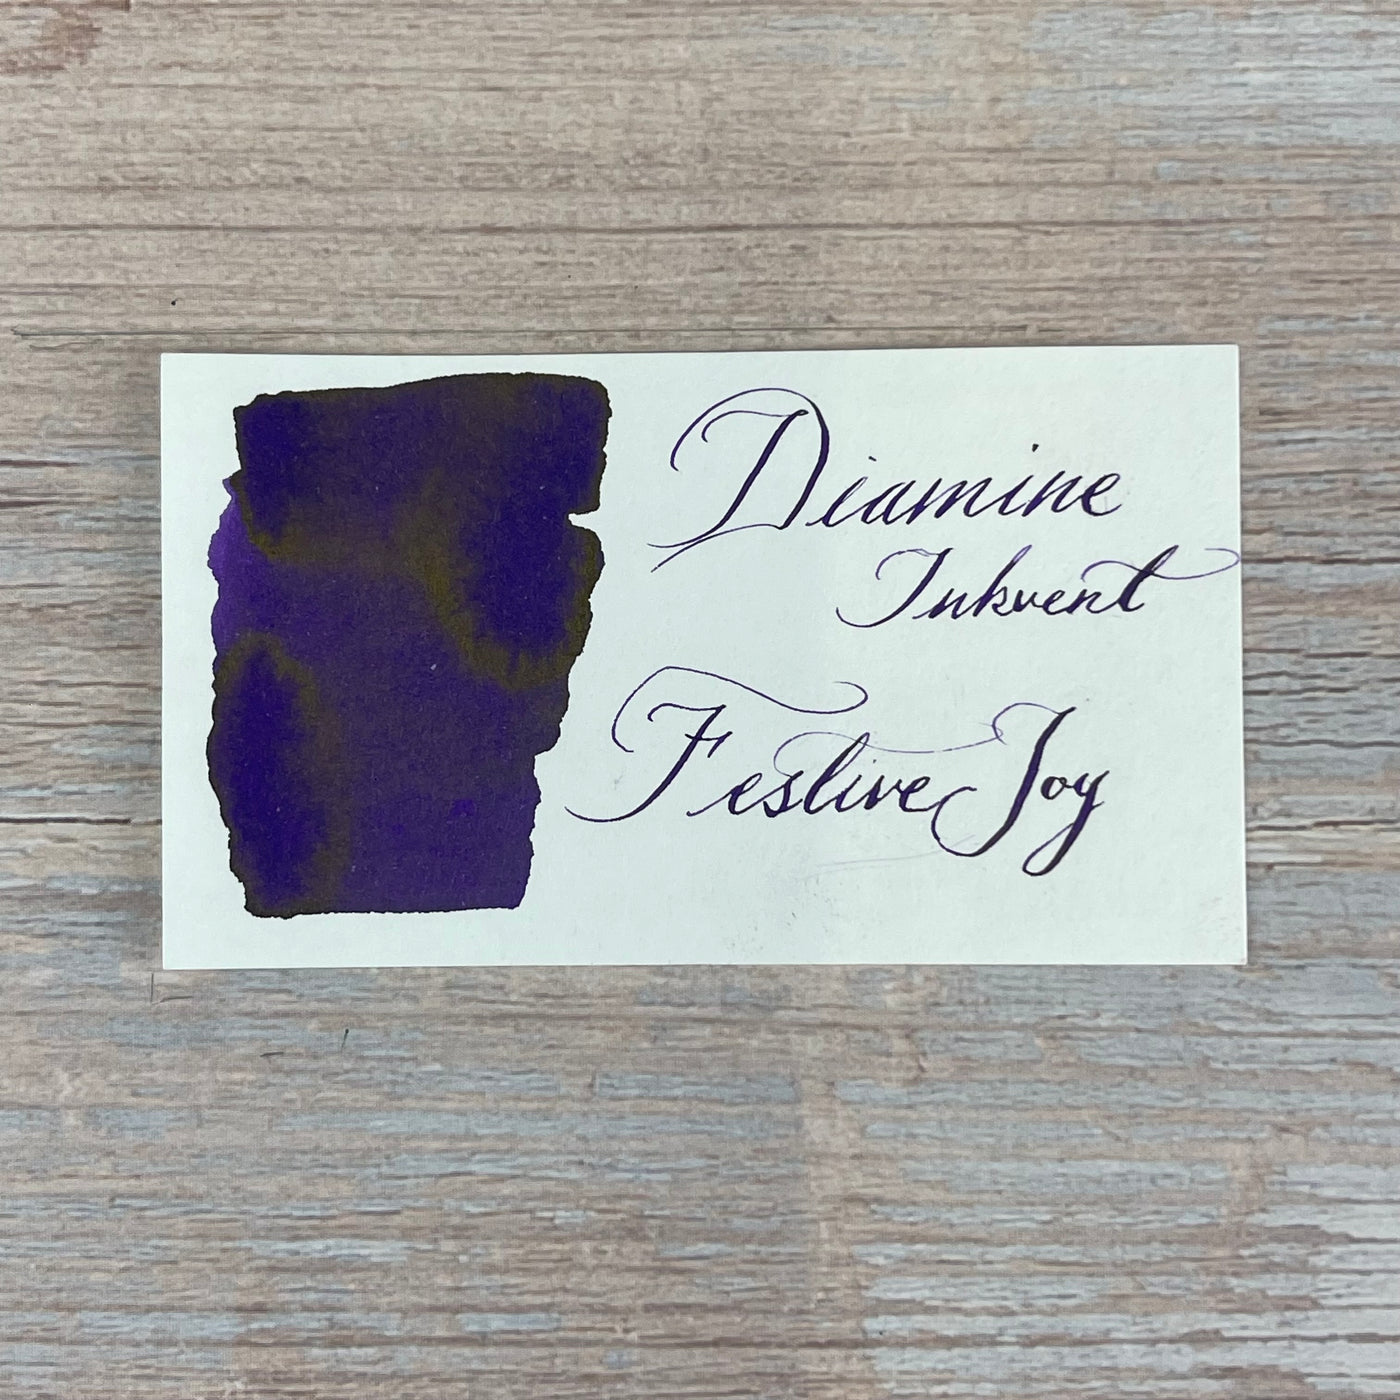 Diamine Inkvent Festive Joy - 50ml Bottled Ink